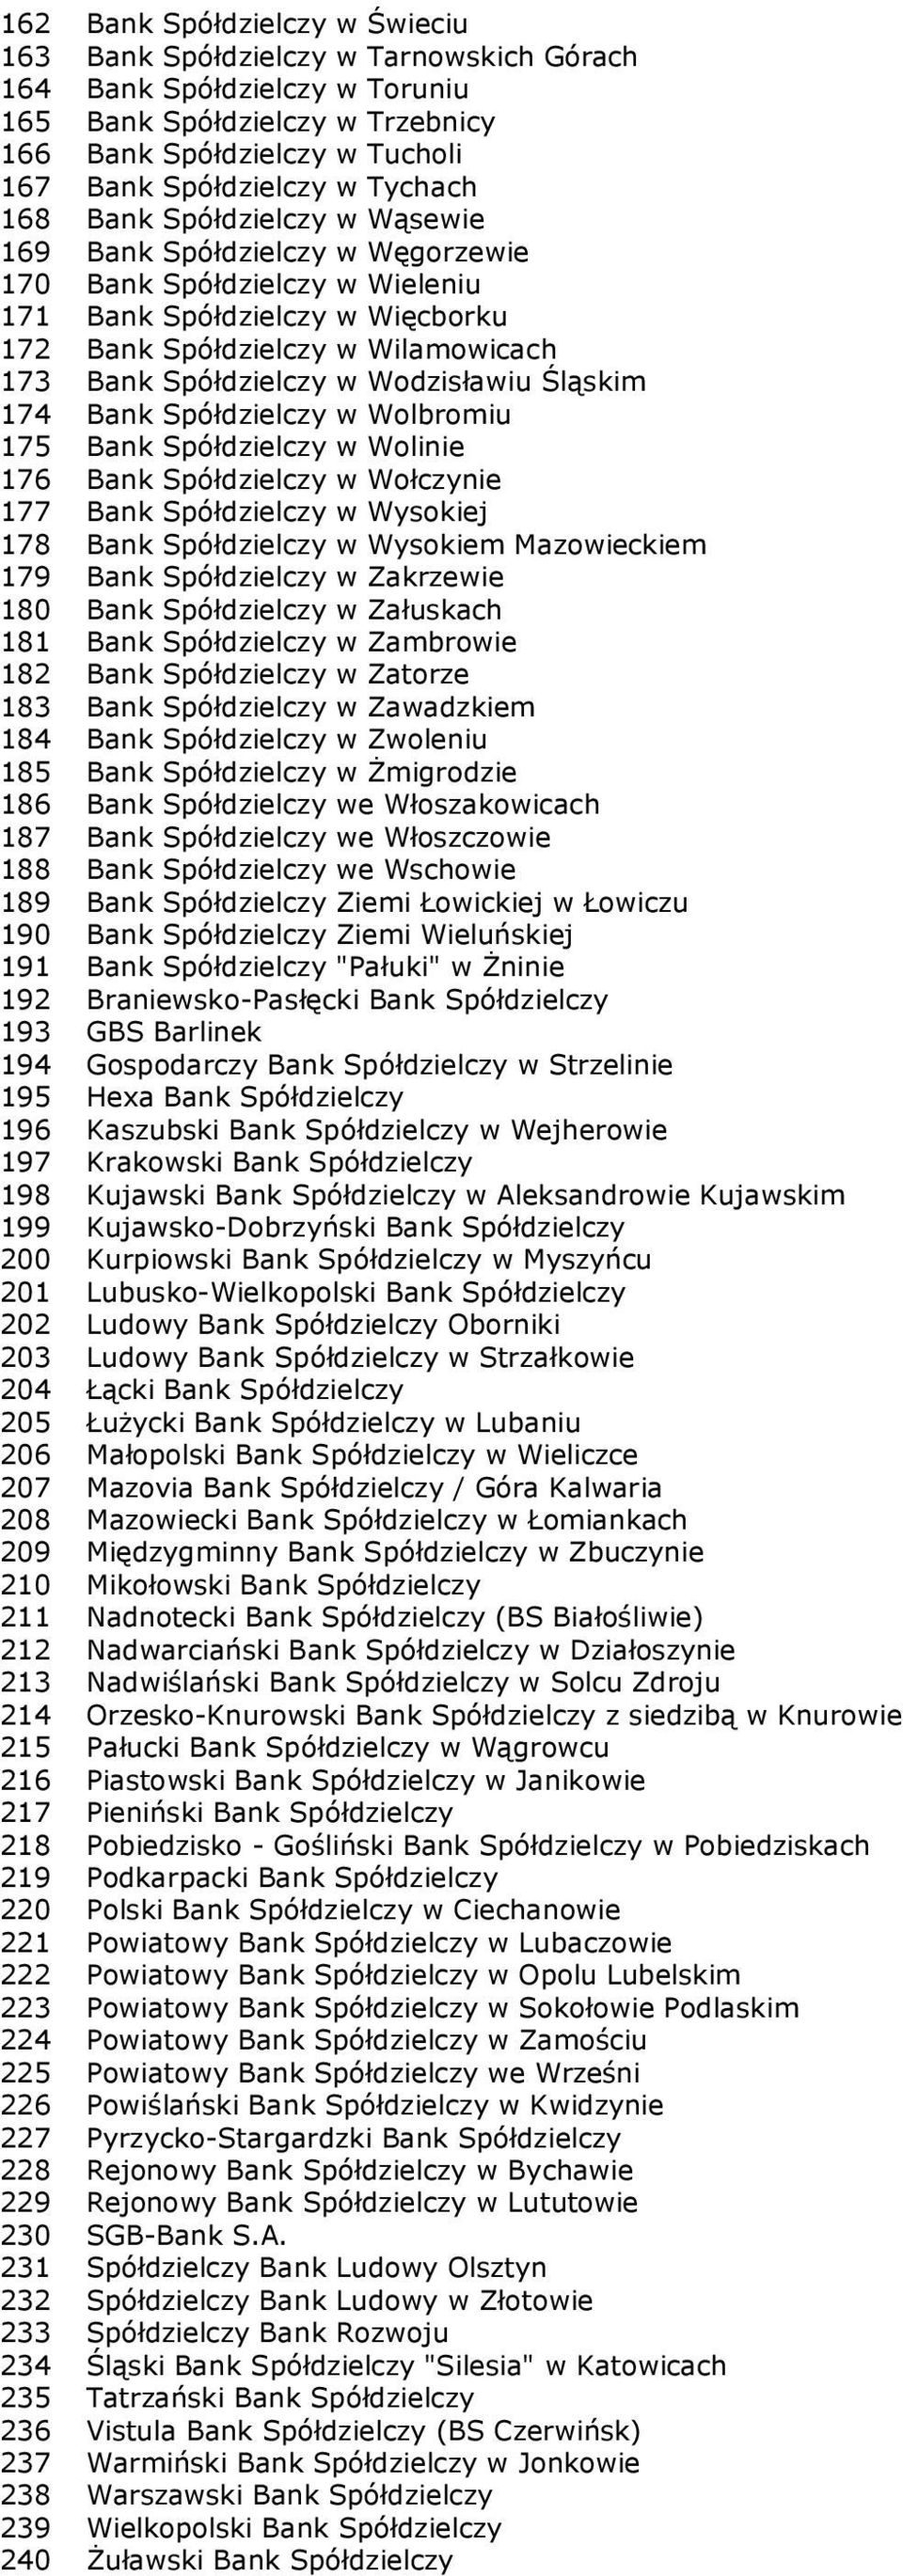 Spółdzielczy w Wodzisławiu Śląskim 174 Bank Spółdzielczy w Wolbromiu 175 Bank Spółdzielczy w Wolinie 176 Bank Spółdzielczy w Wołczynie 177 Bank Spółdzielczy w Wysokiej 178 Bank Spółdzielczy w